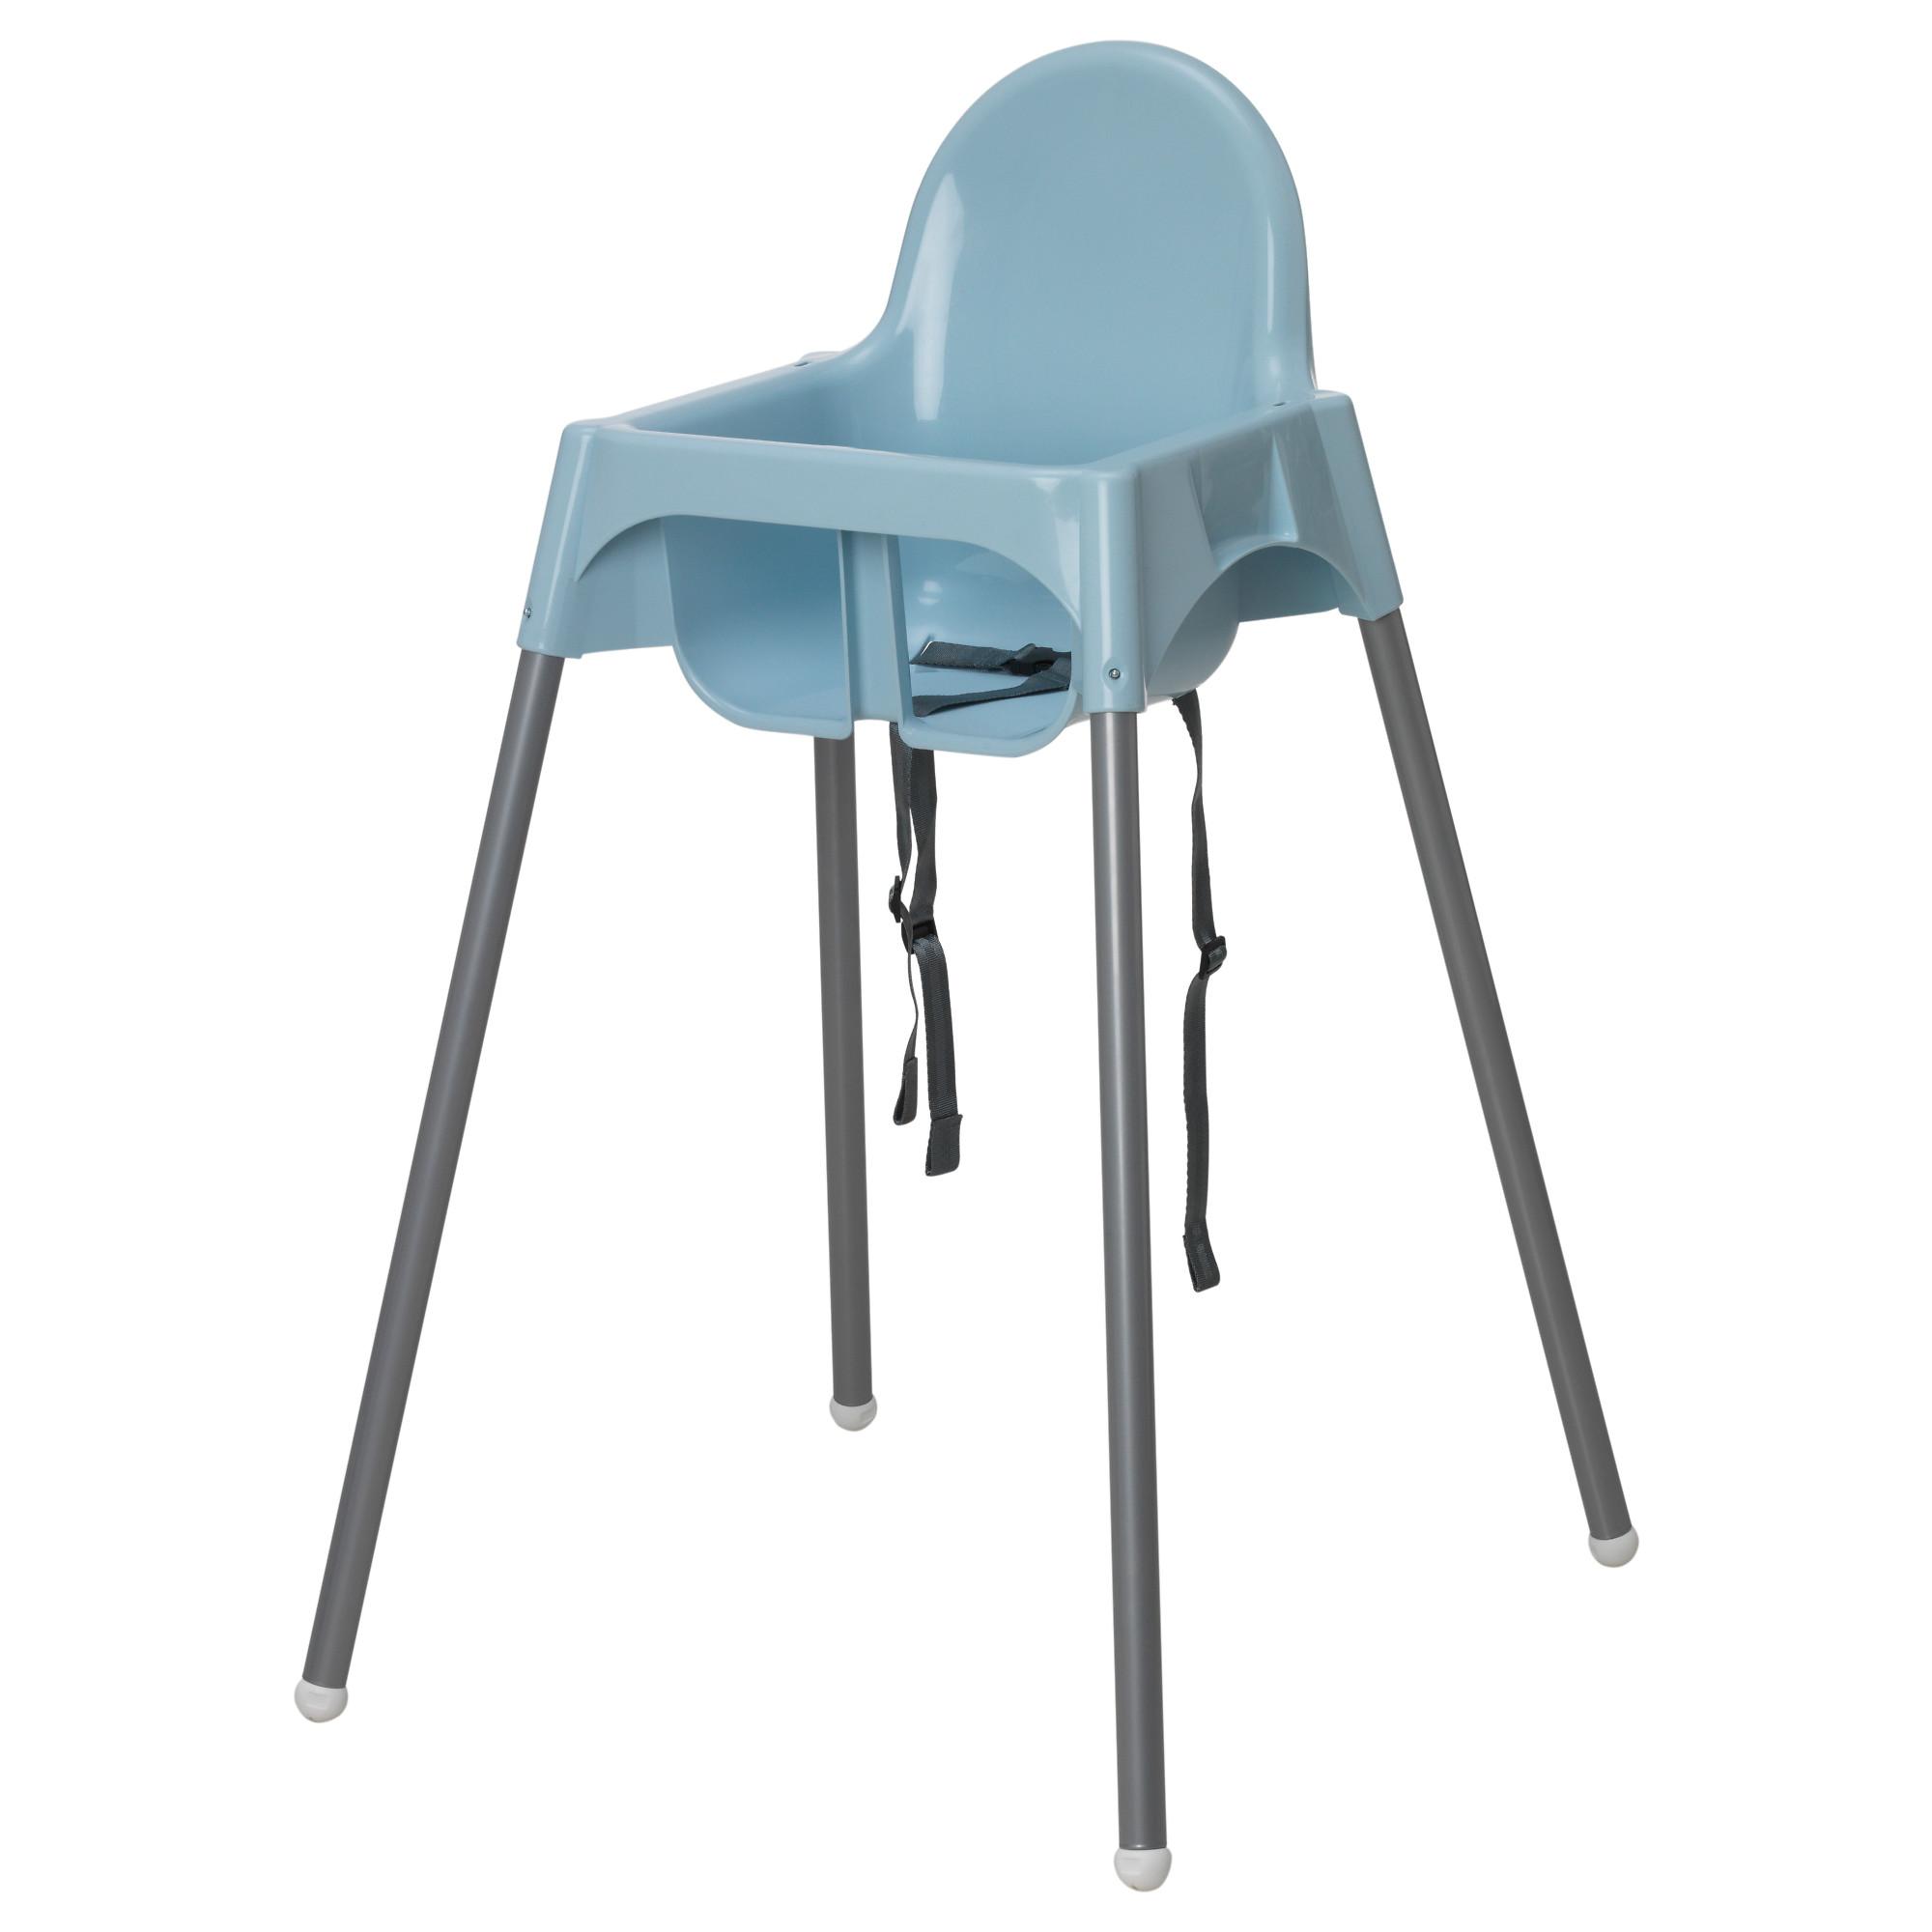 เก้าอี้นั่งทานอาหาร เก้าอี้สูง อันติลูป เก้าอี้ทานข้าวเด็กทรงสูง (มีสี ขาว /ฟ้า/ชมพู) ไม่มีถาด (Untiloop High Chair)